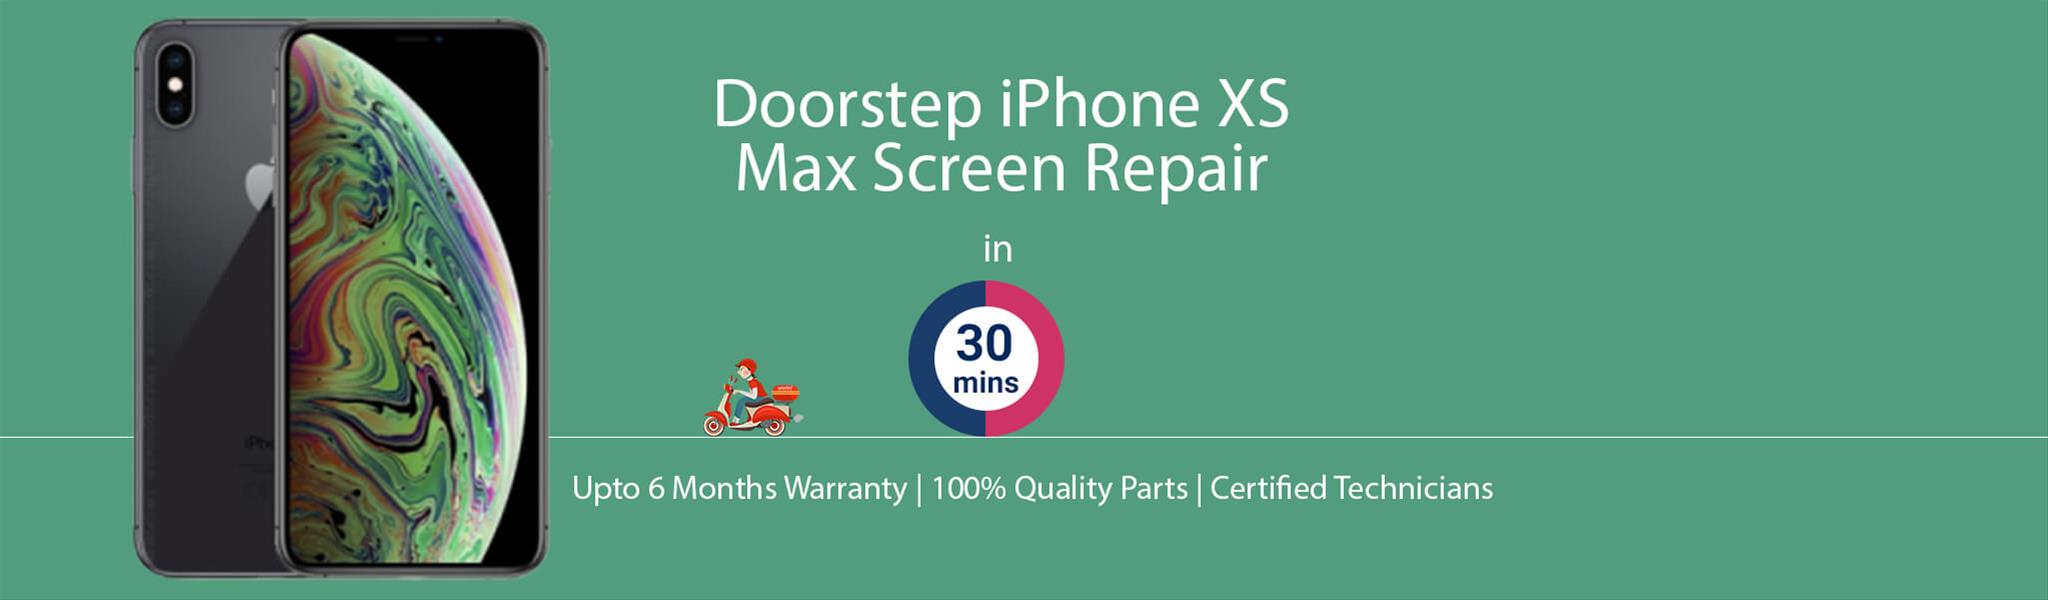 iphone-xs-max-screen-repair.jpg